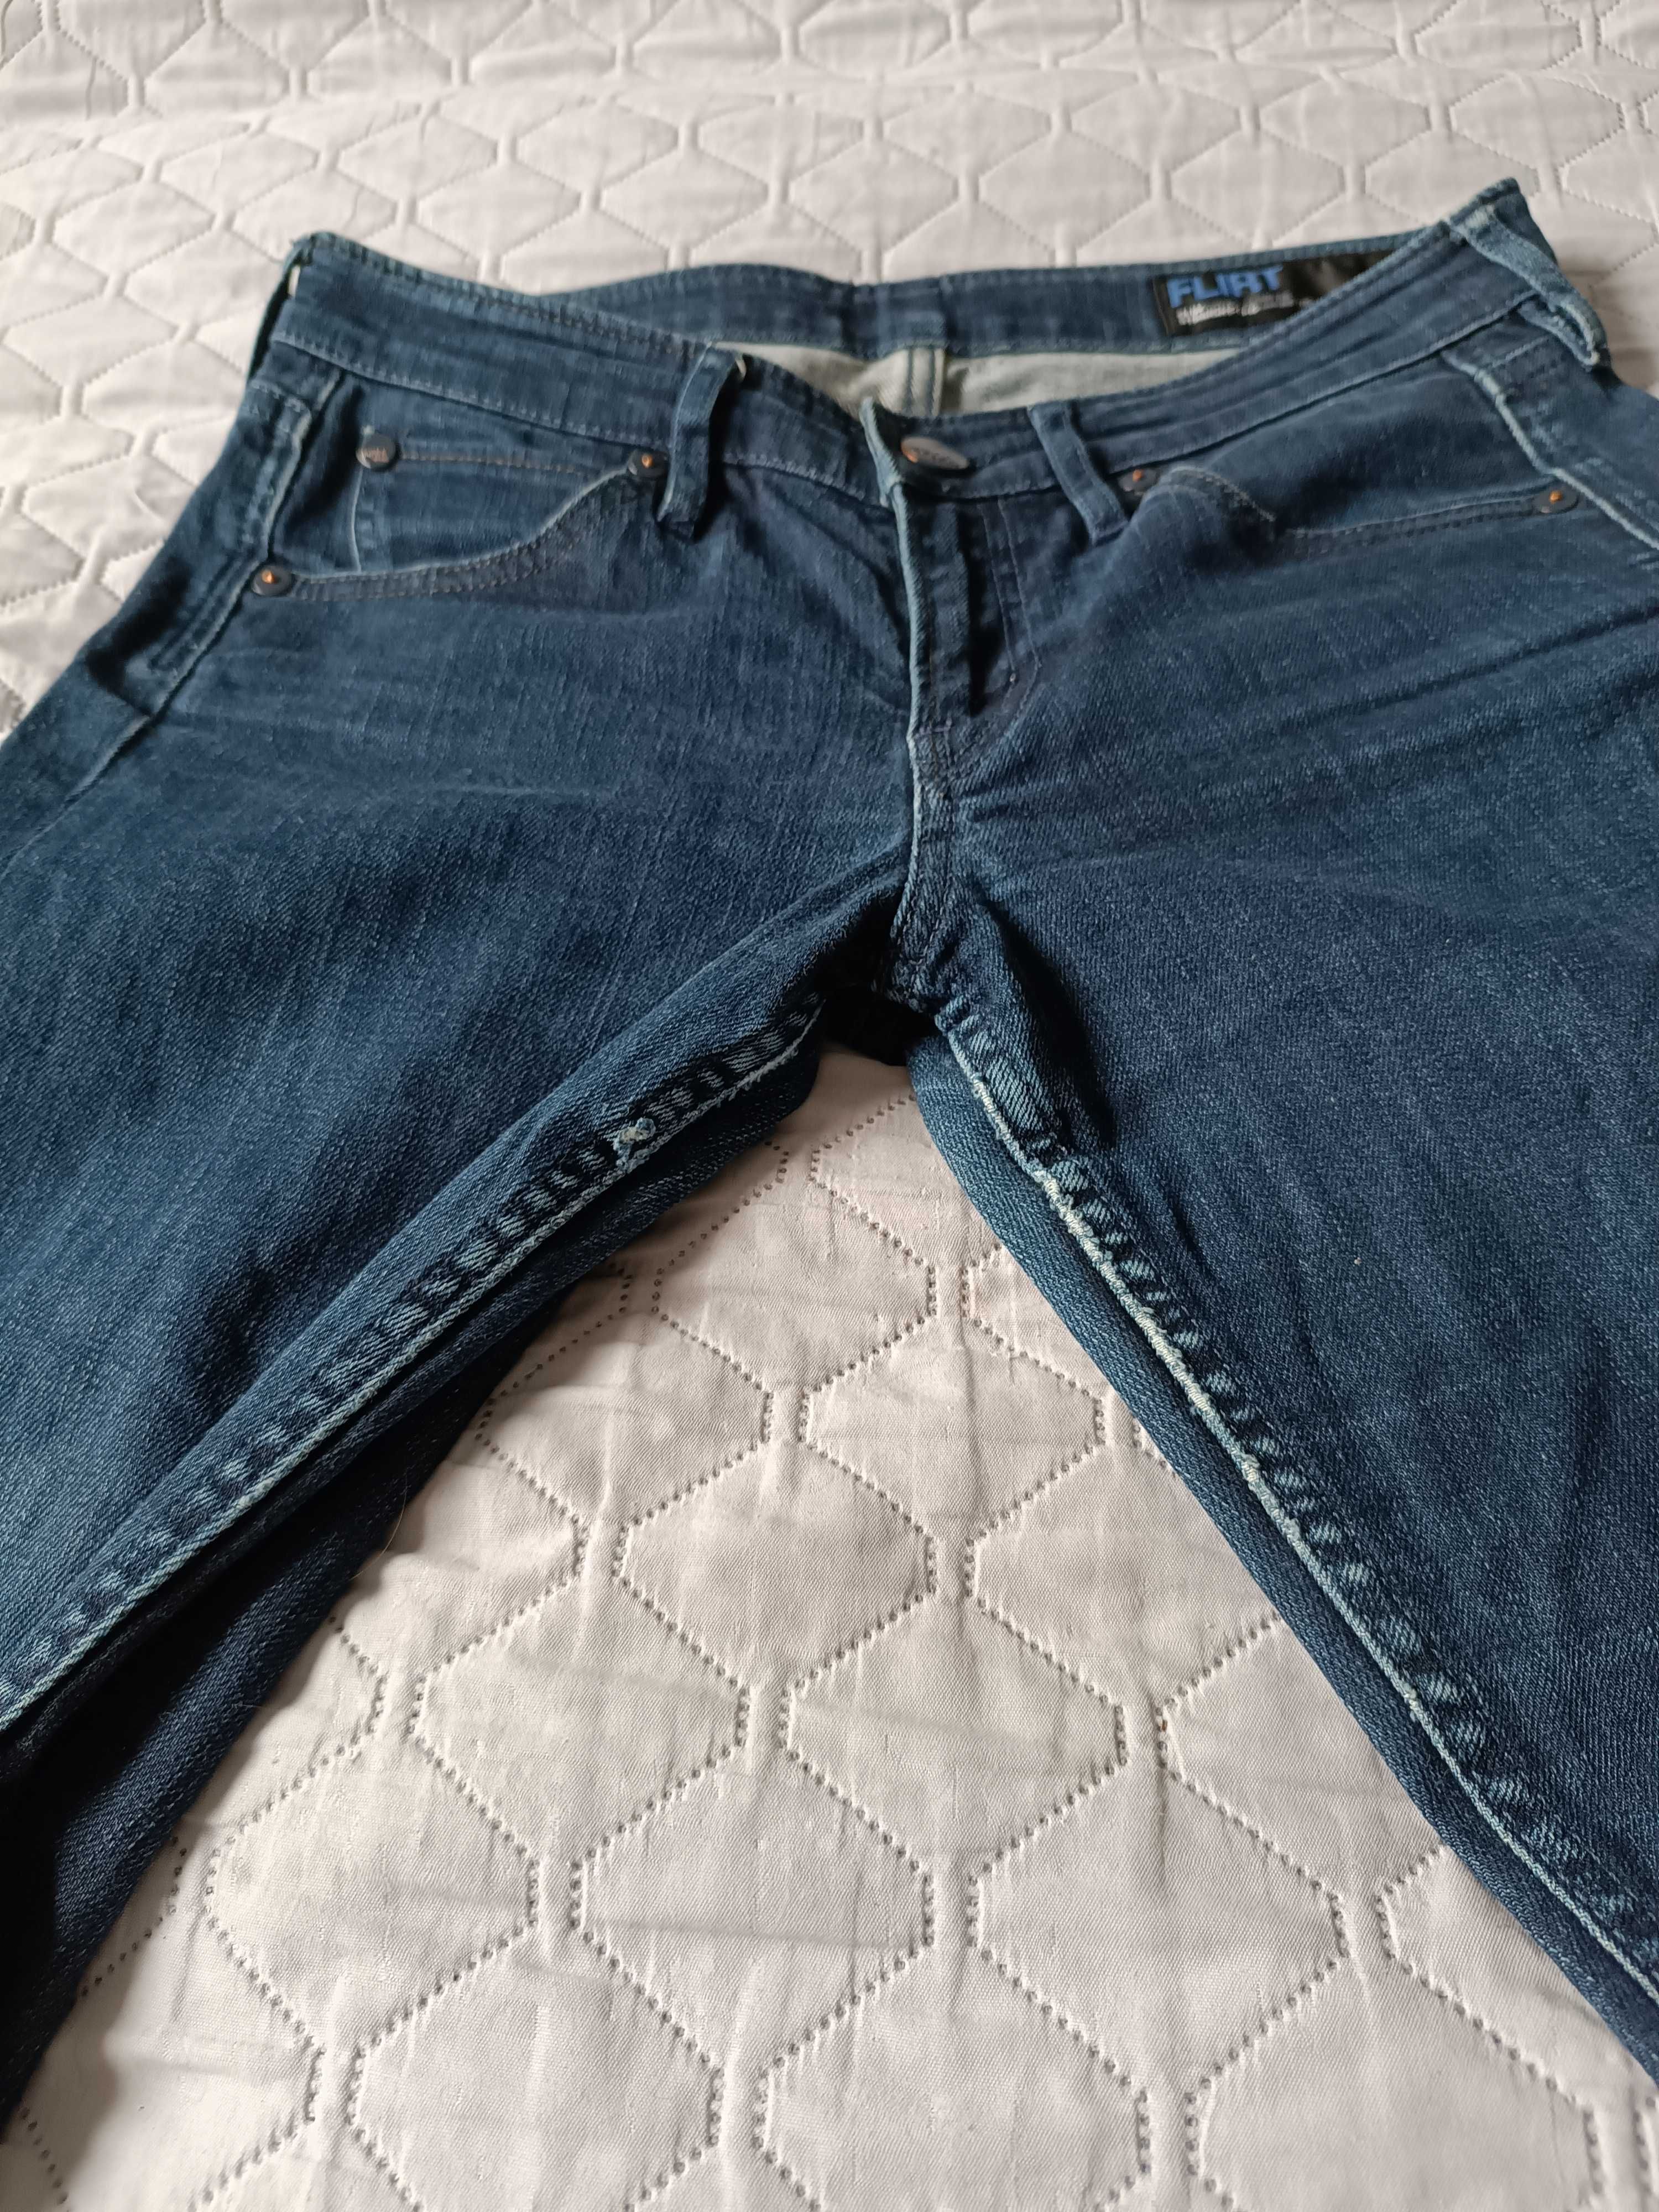 Spodnie Jeans Mexx Damskie model Flirt rozmiar 28